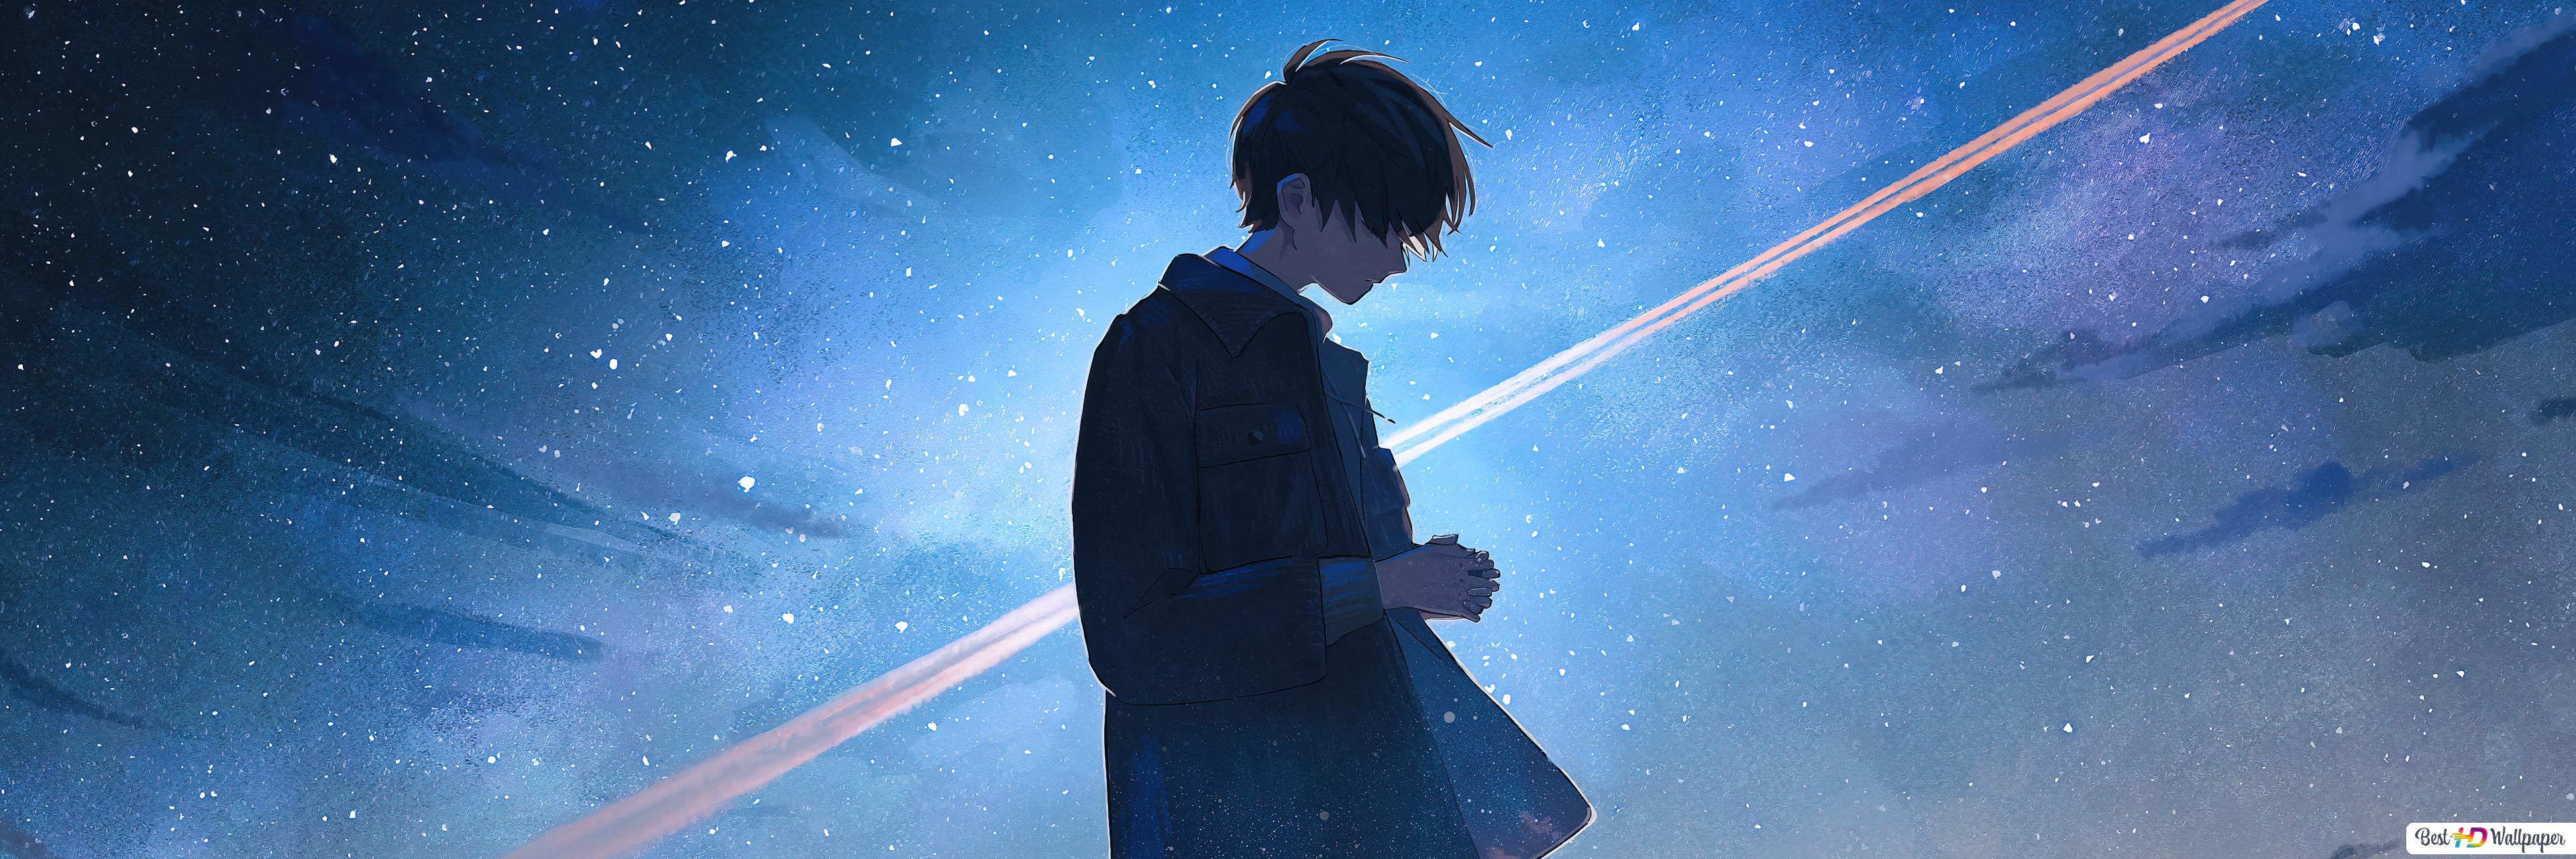 Alone Anime Boy HD wallpaper download